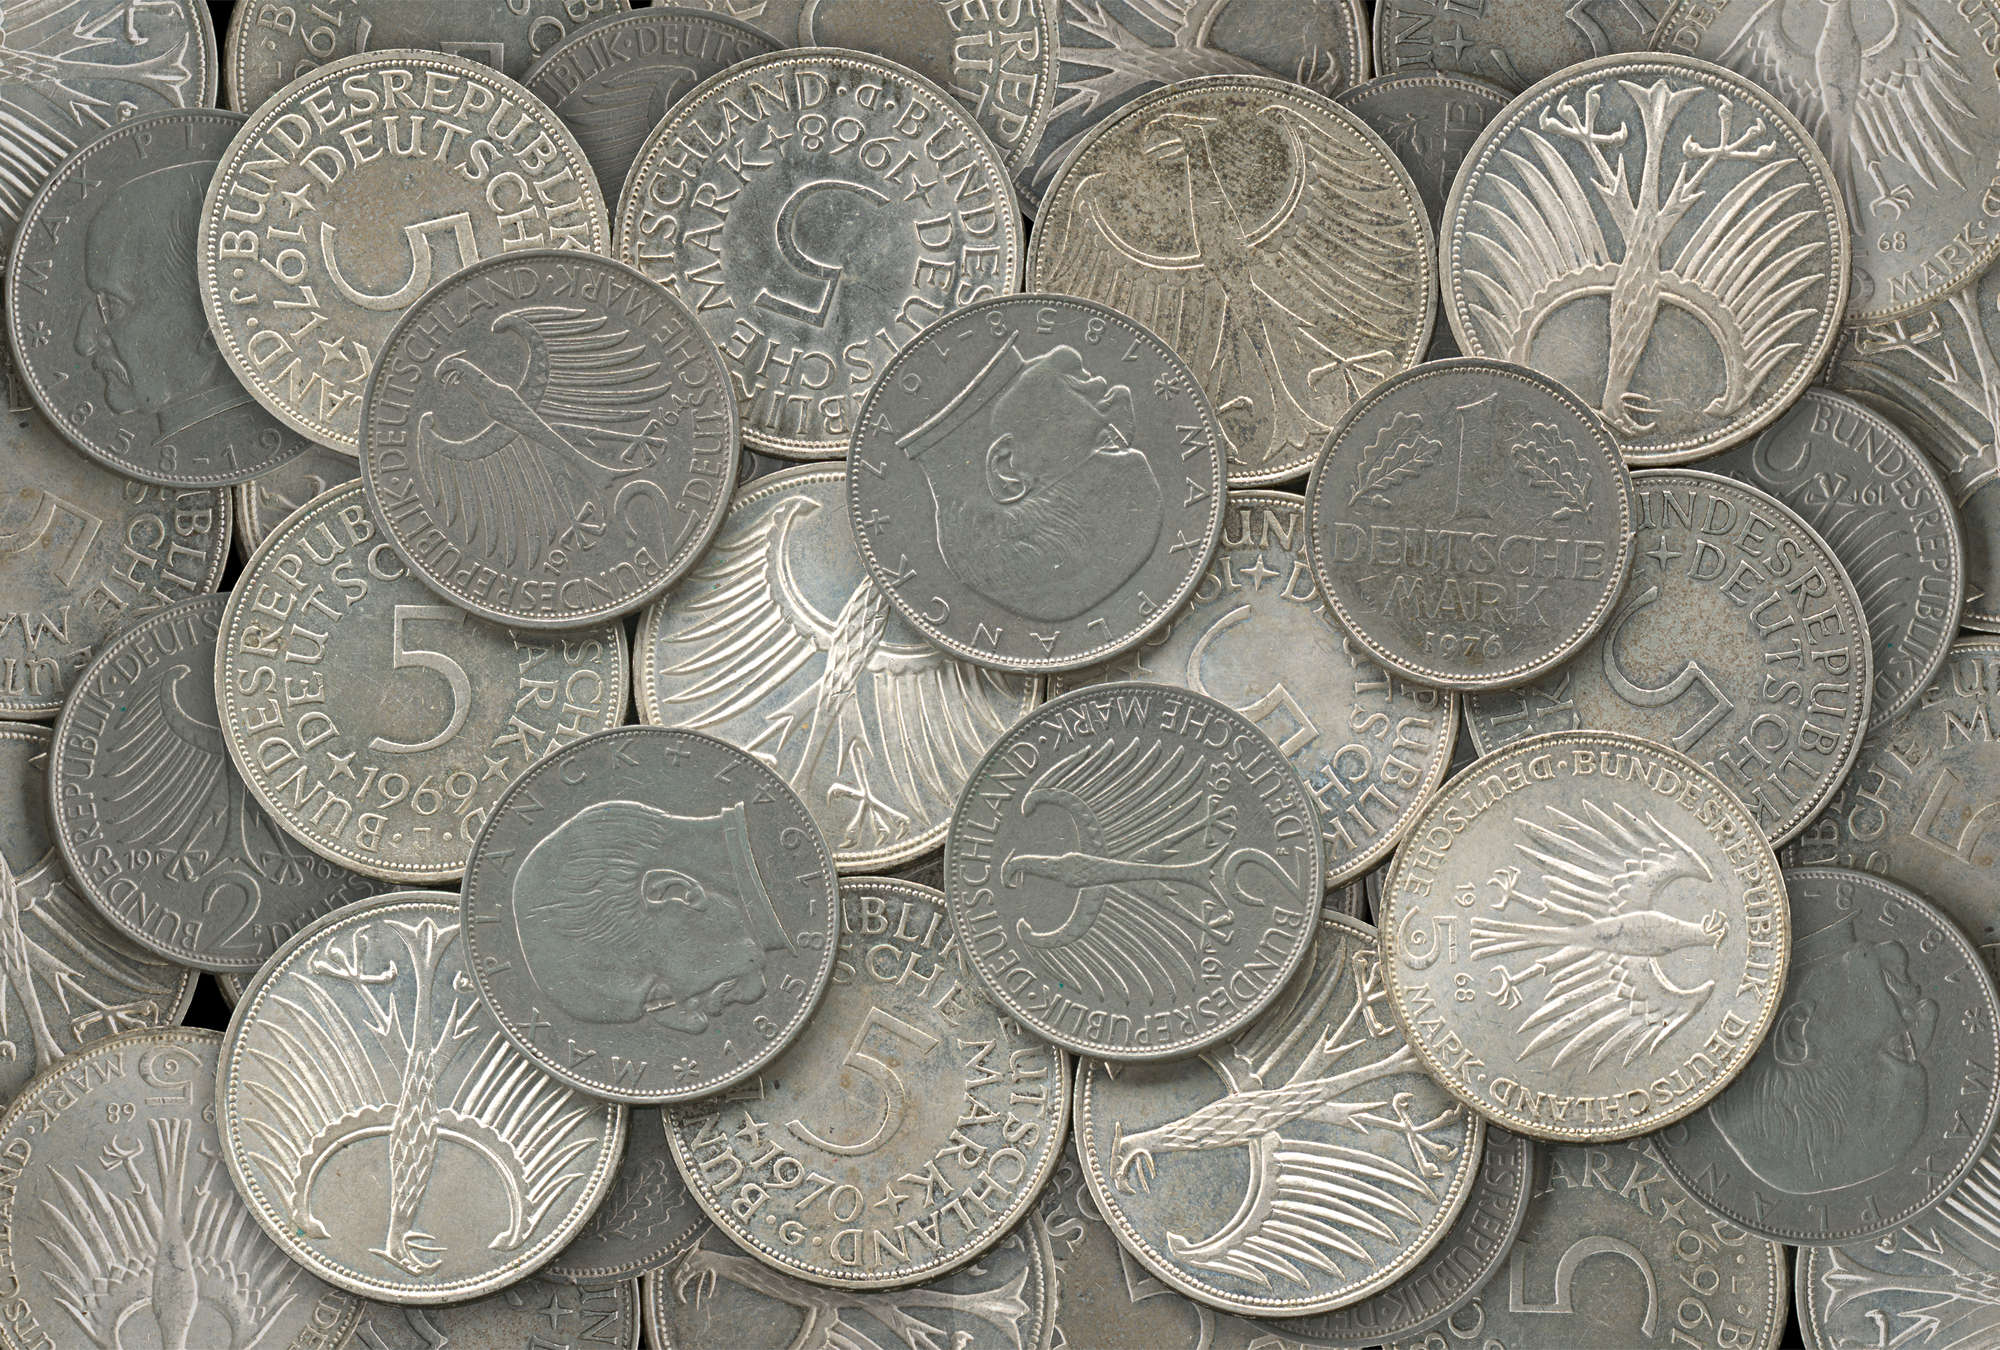             Monete d'argento in dettaglio con effetto 3D
        